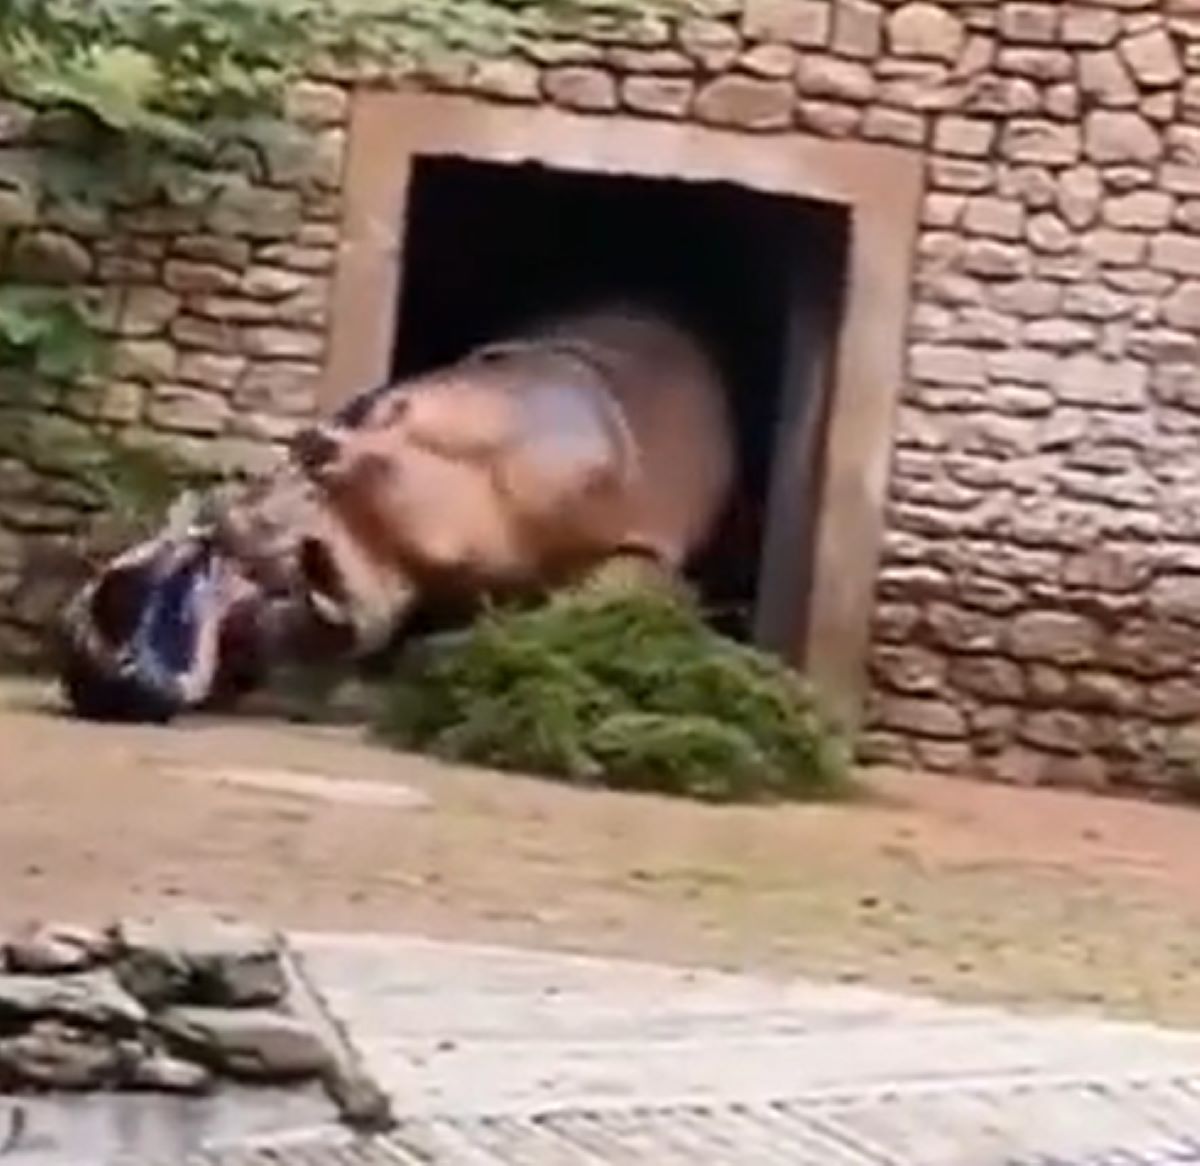  hipopotamo-ataca-cuidador 